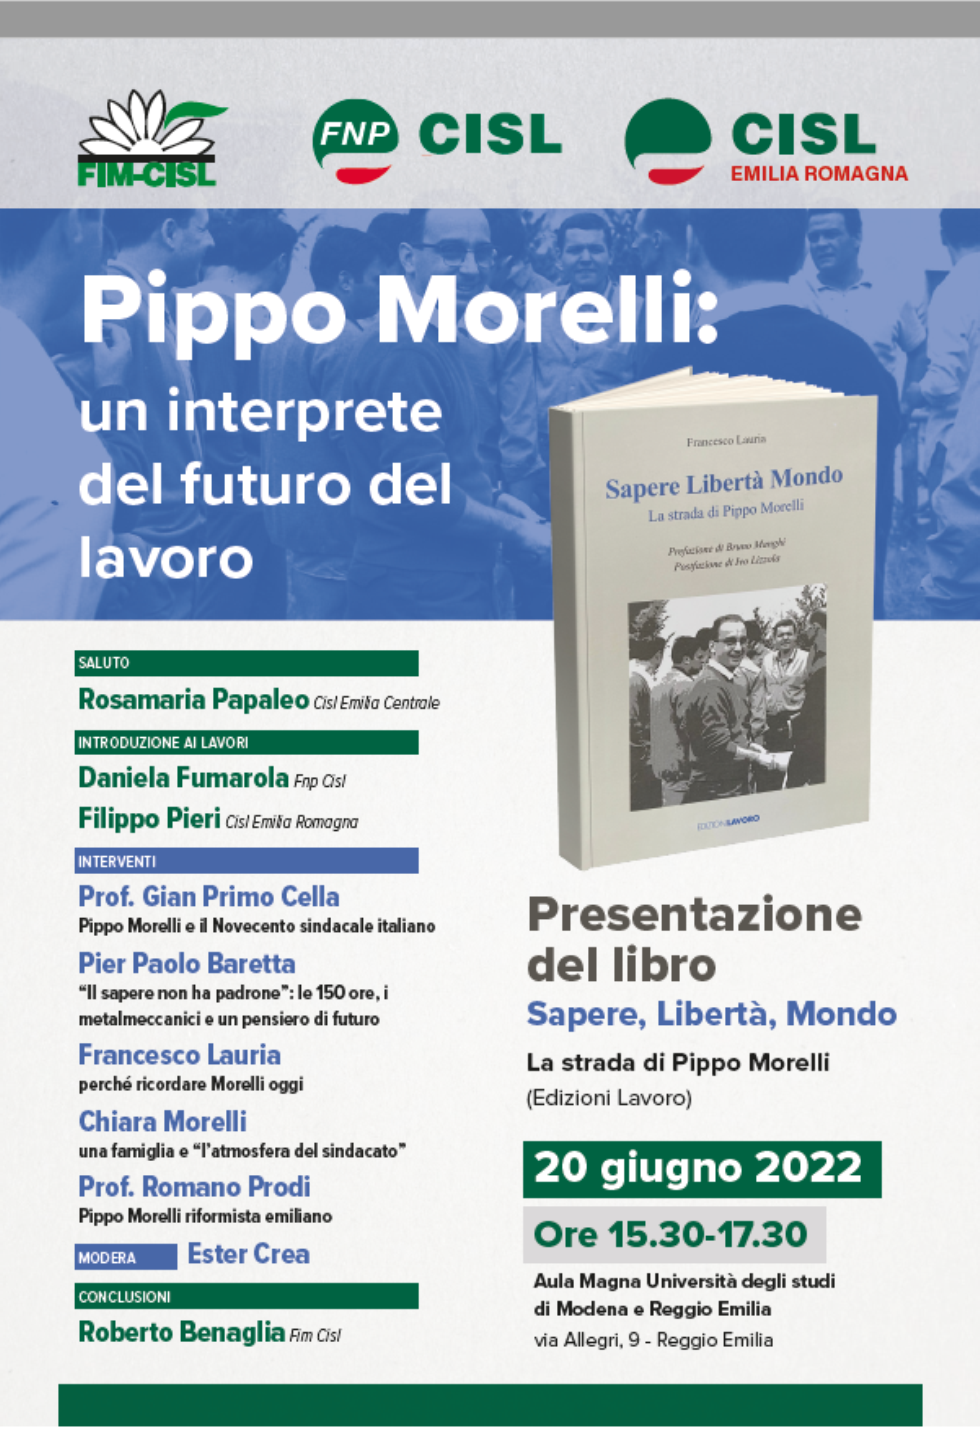 Pippo Morelli: un interprete del futuro del lavoro, una iniziativa di FIM-CISL, FNP-CISL, CISL Emilia Romagna.